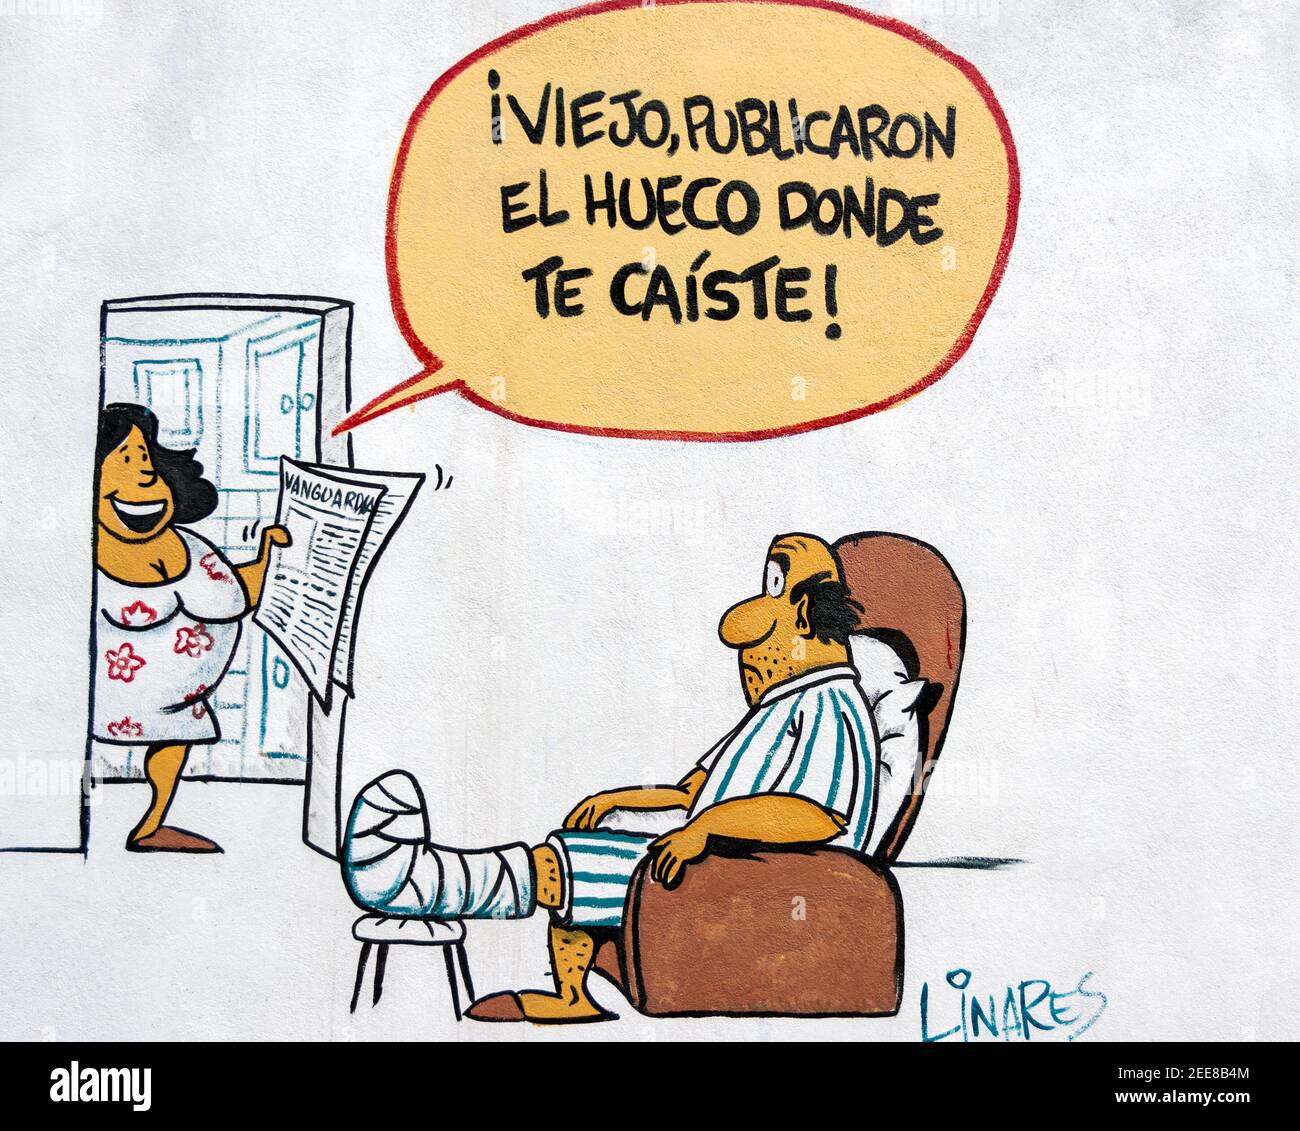 Offizielle Humor auf der Melaito Cartoon Zeitung Wand nach gemalt Der Raul Castro reformiert die Botschaft ist offener und Kritisch gegenüber der sozialistischen SoC Stockfoto